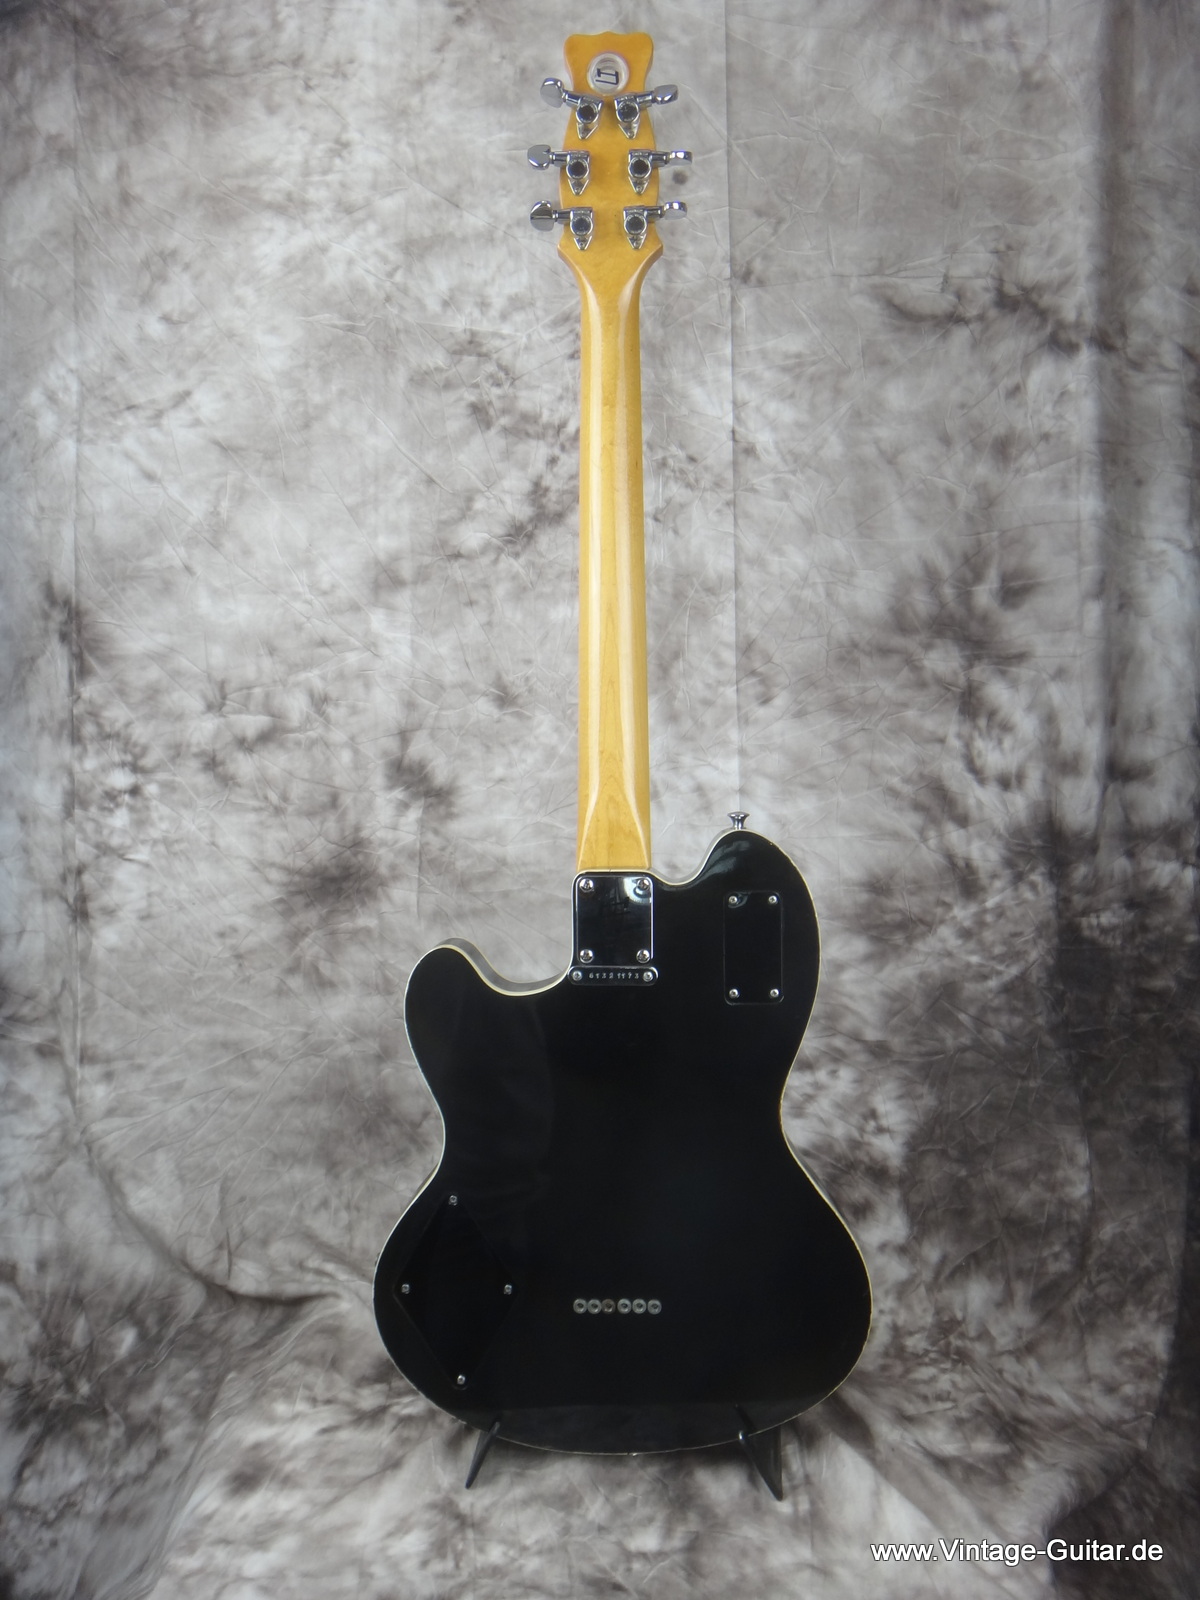 1973 Hayman 2020 guitar